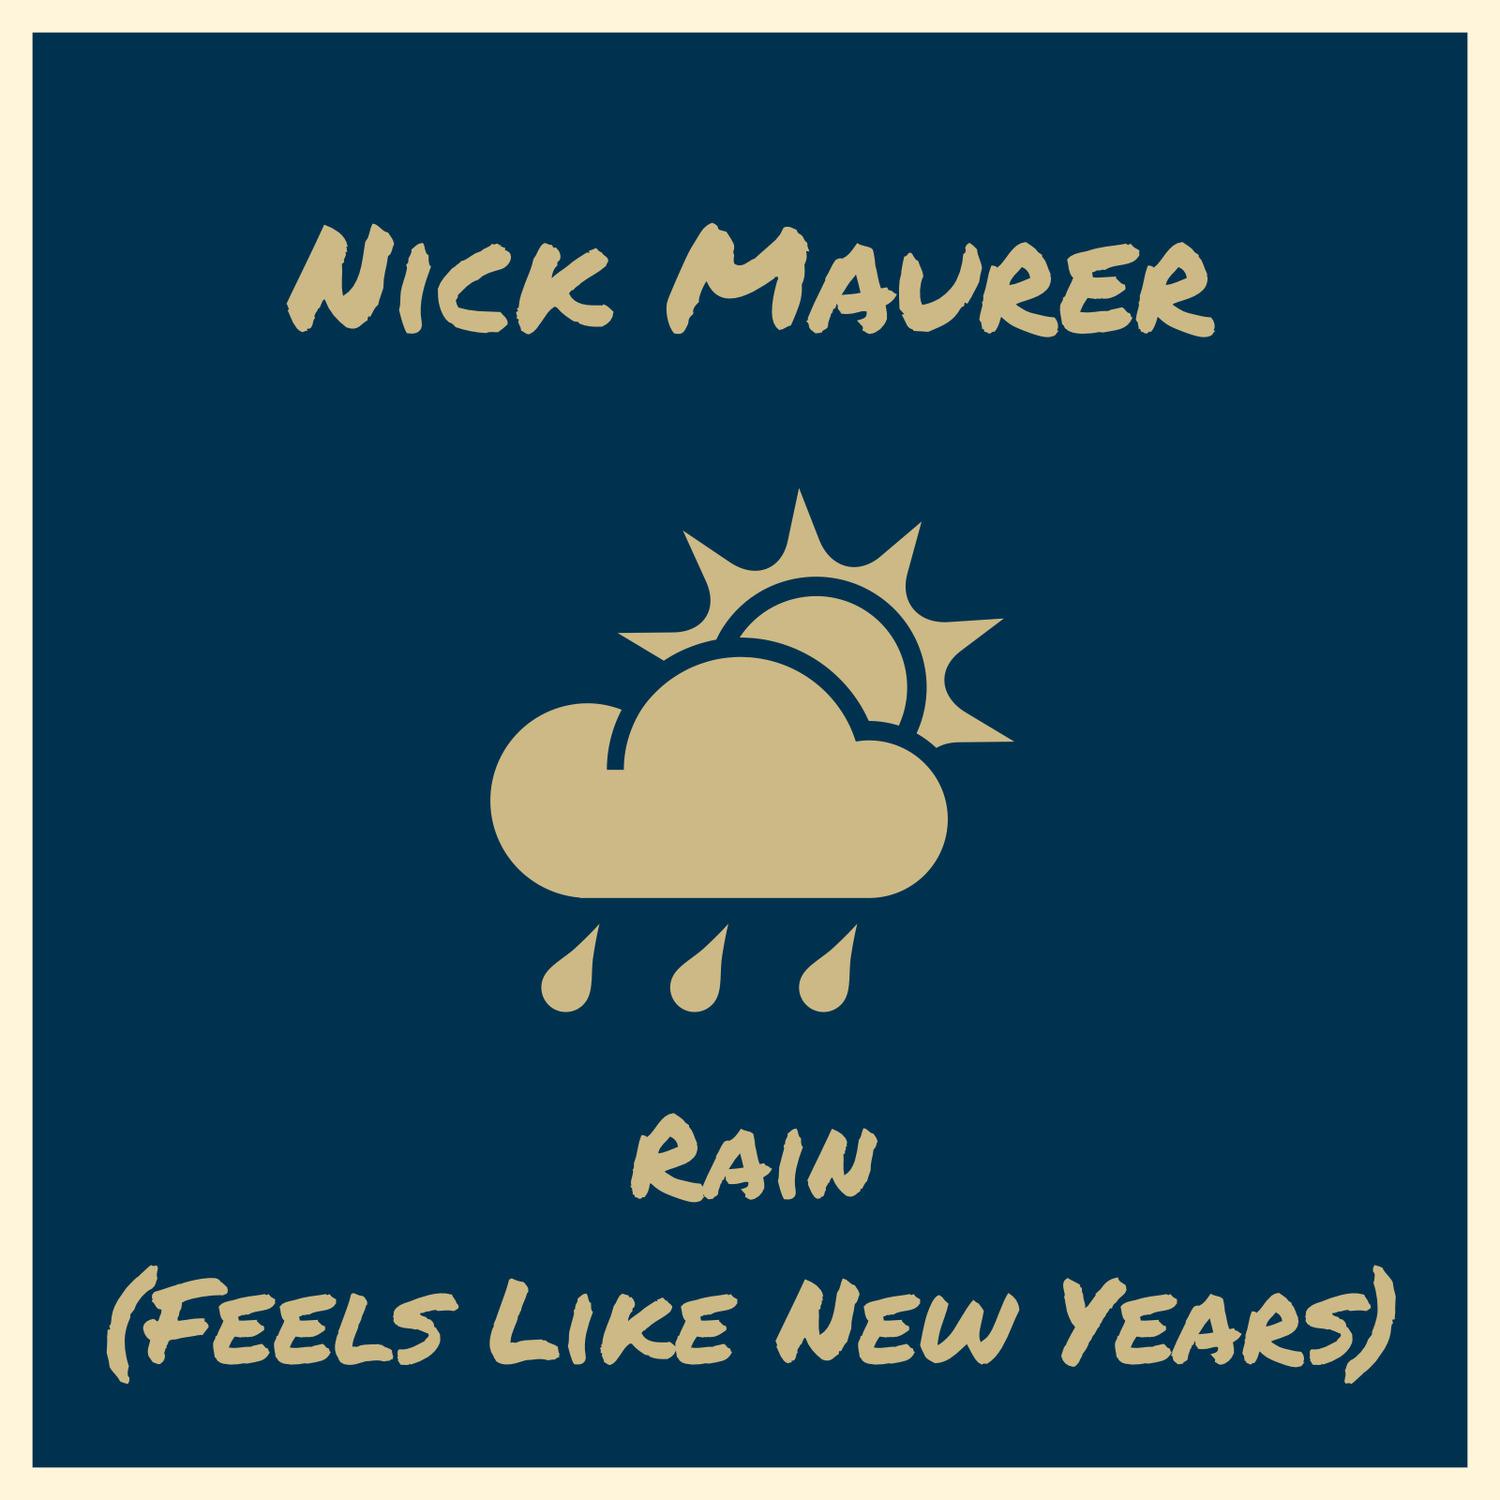 Nick Maurer - Rain (Feels Like New Years)